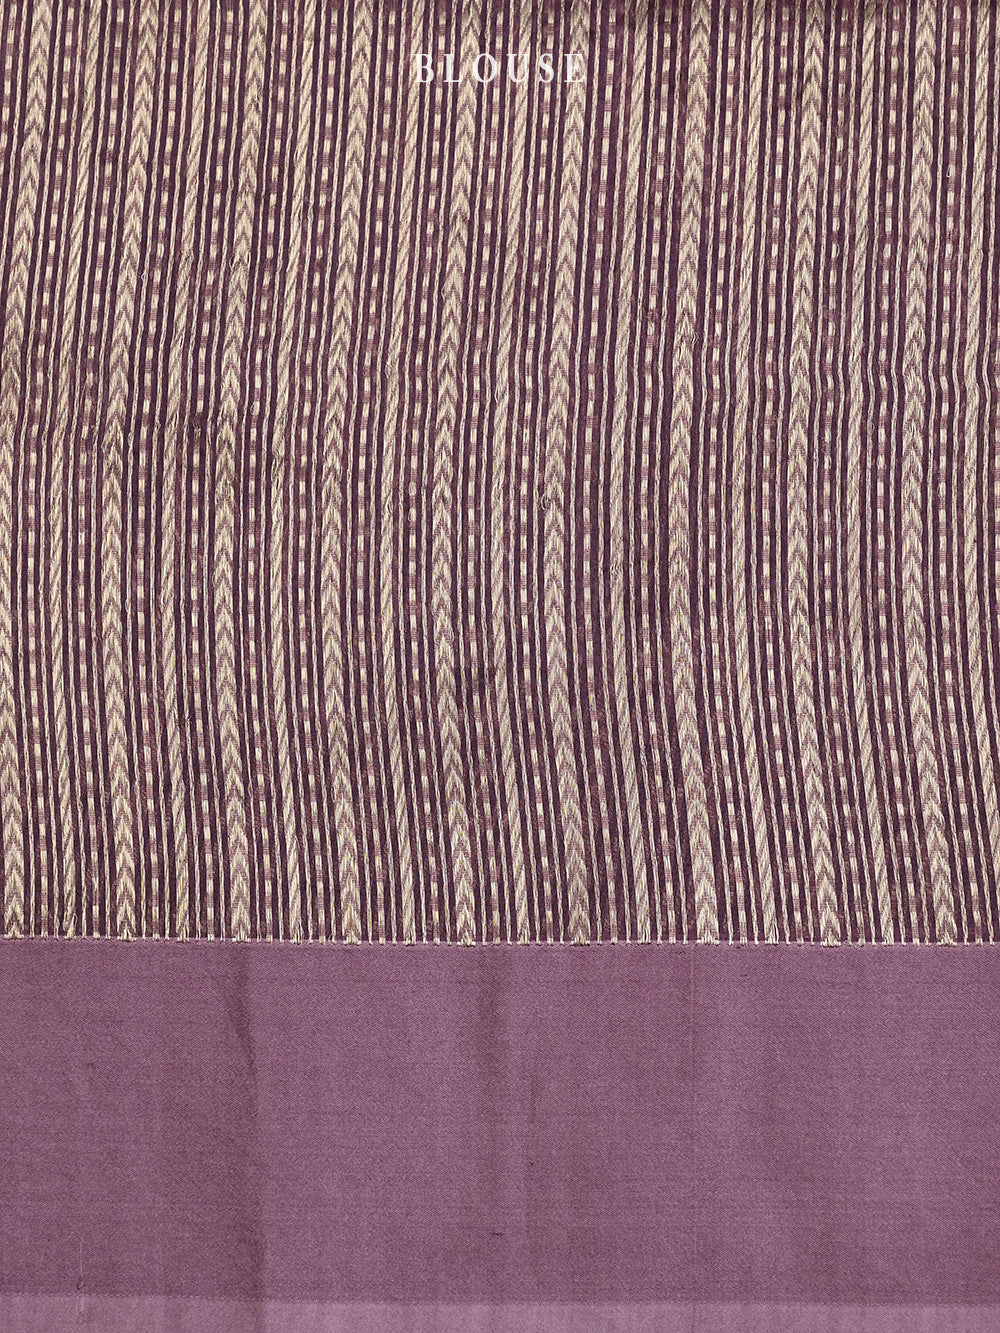 Pink Purple Booti Organza Printed Banarasi Saree - Sacred Weaves